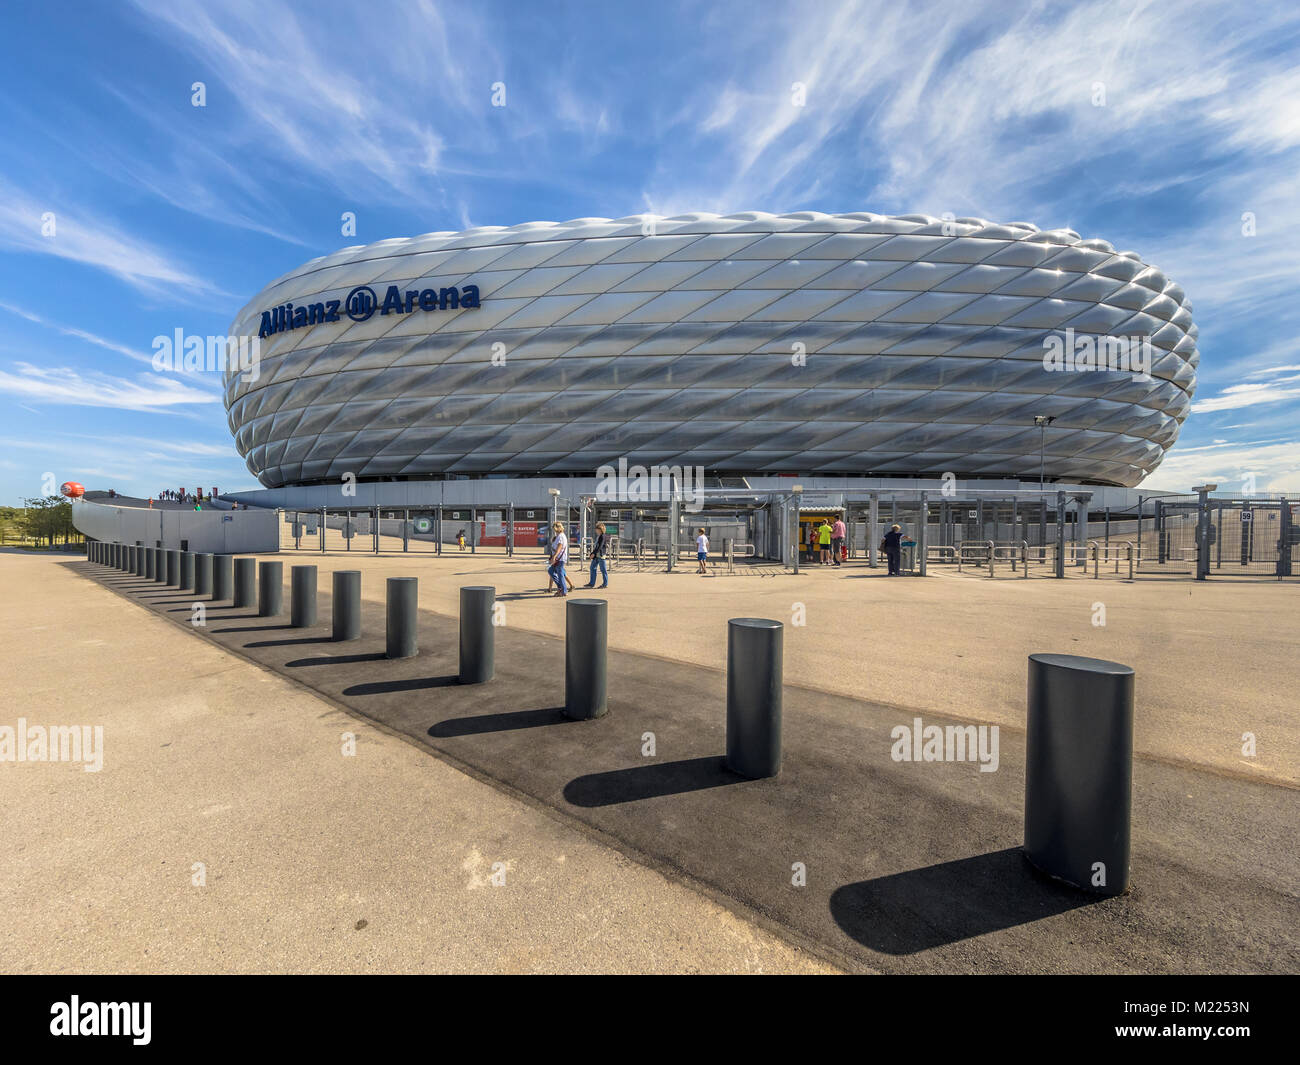 Monaco di Baviera, Germania - 14 August 2017: ingresso stadio Allianz Arena di Monaco di Baviera quadrato, Germania. L'Allianz Arena è la casa dello stadio di calcio per FC Baye Foto Stock